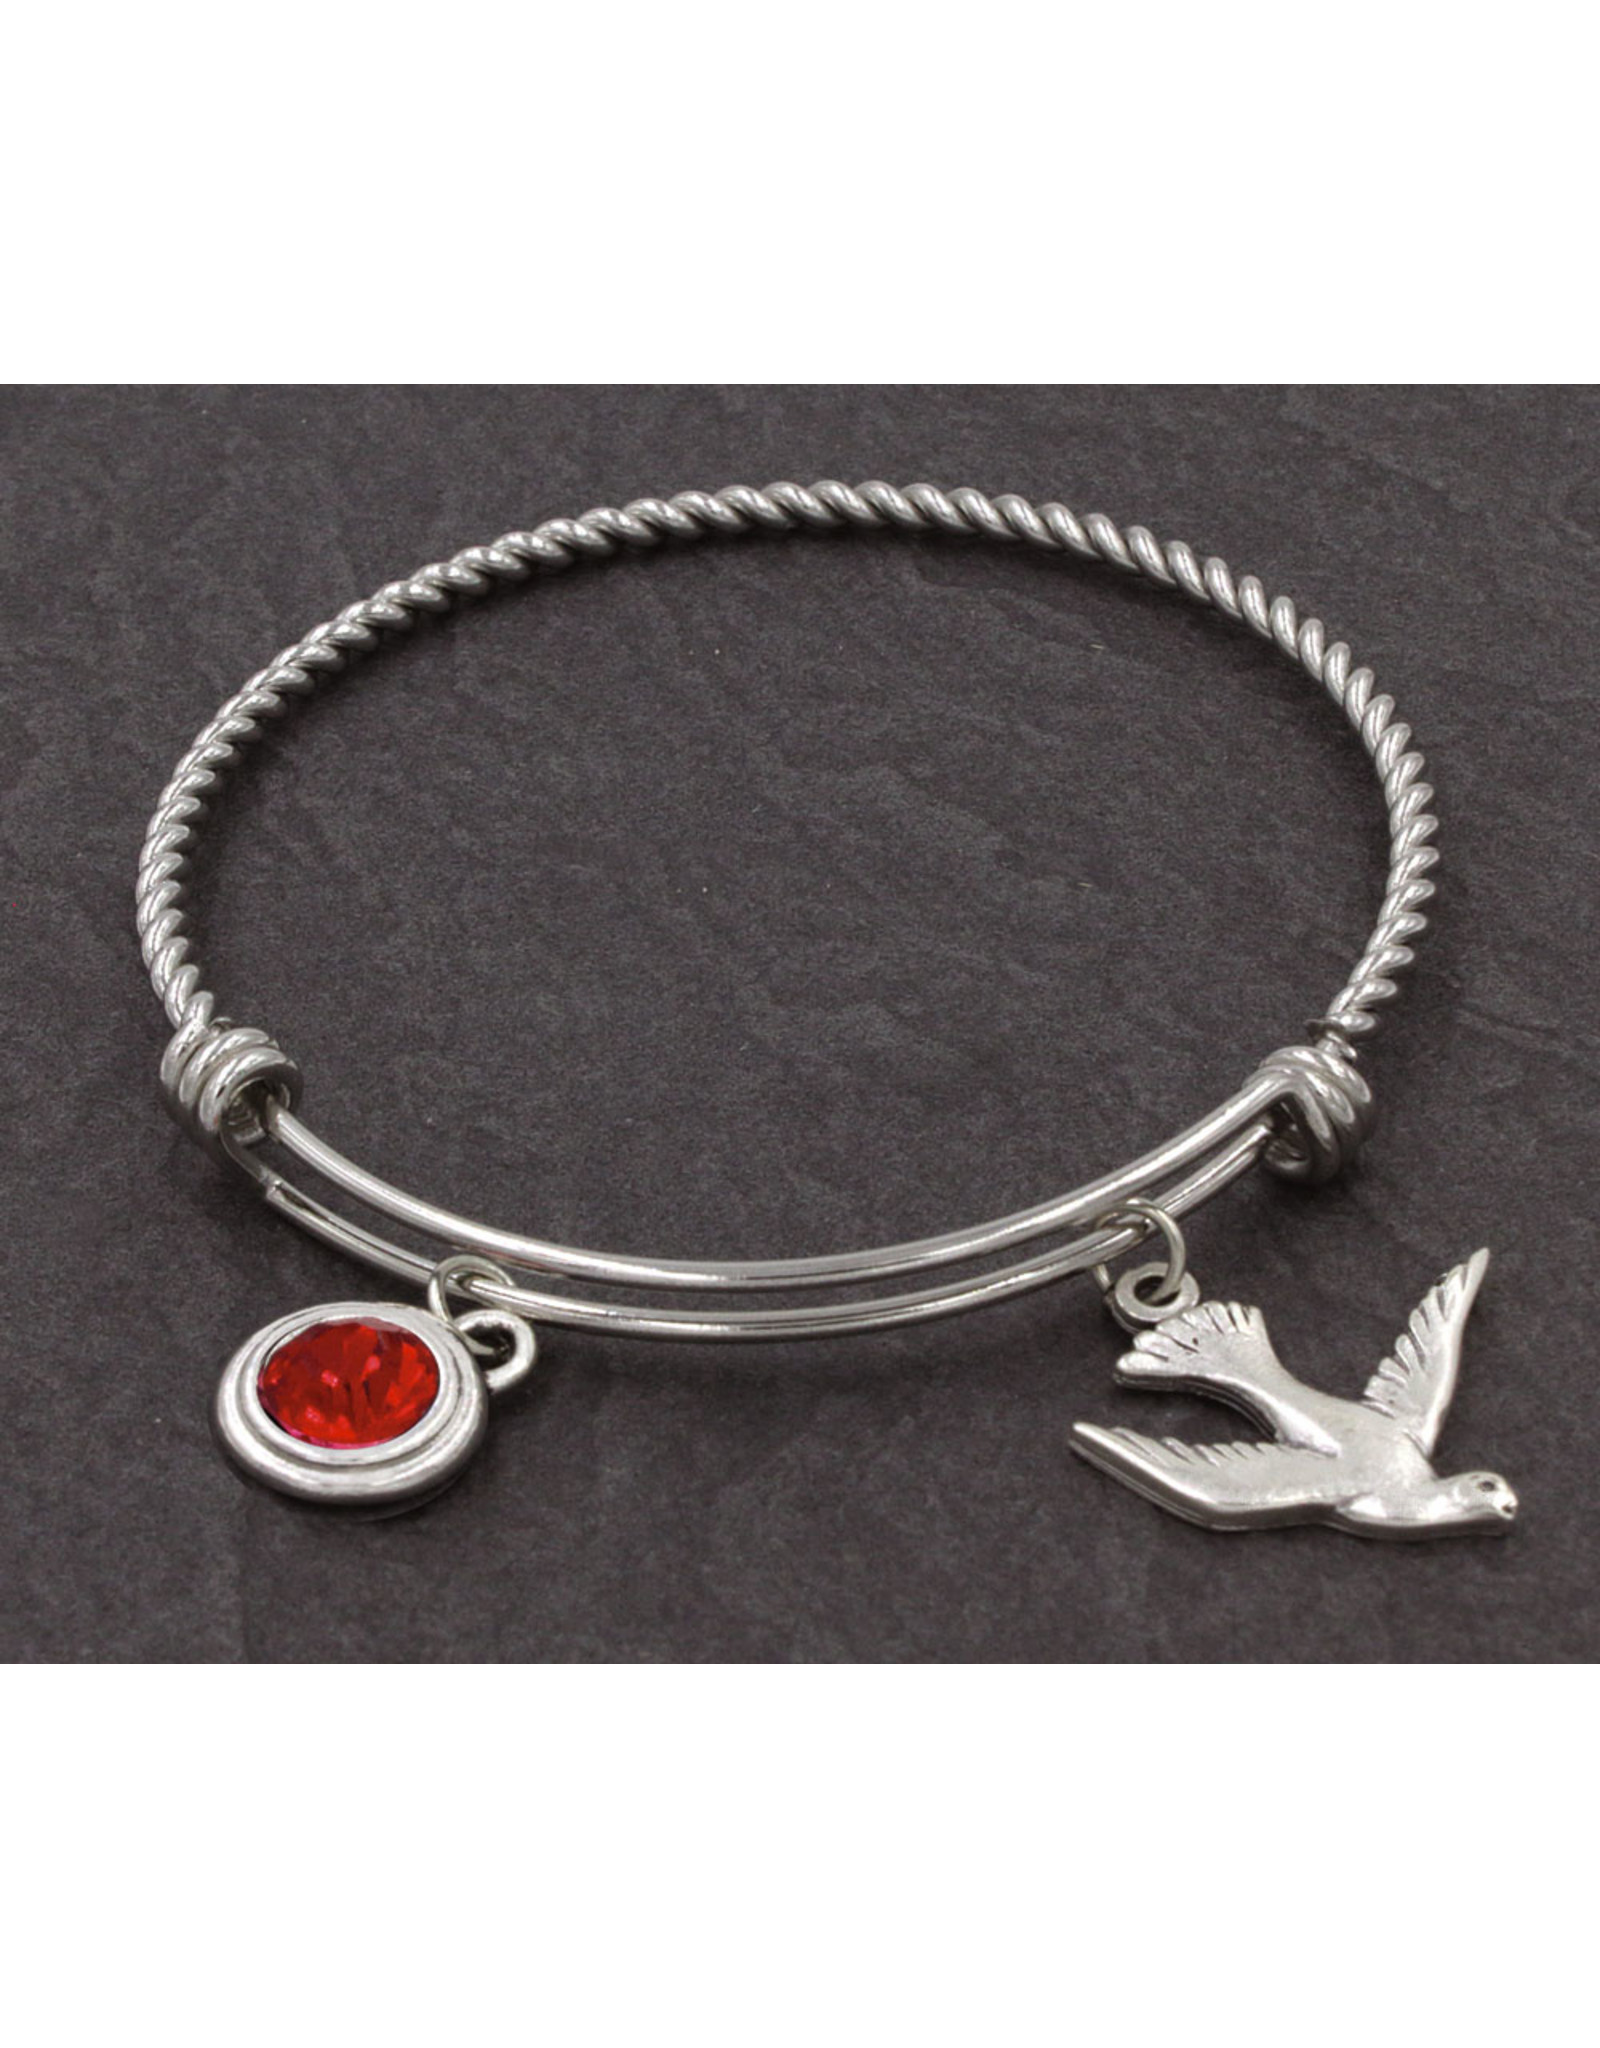 Bracelet - Holy Spirit Dove Charm Stainless Steel